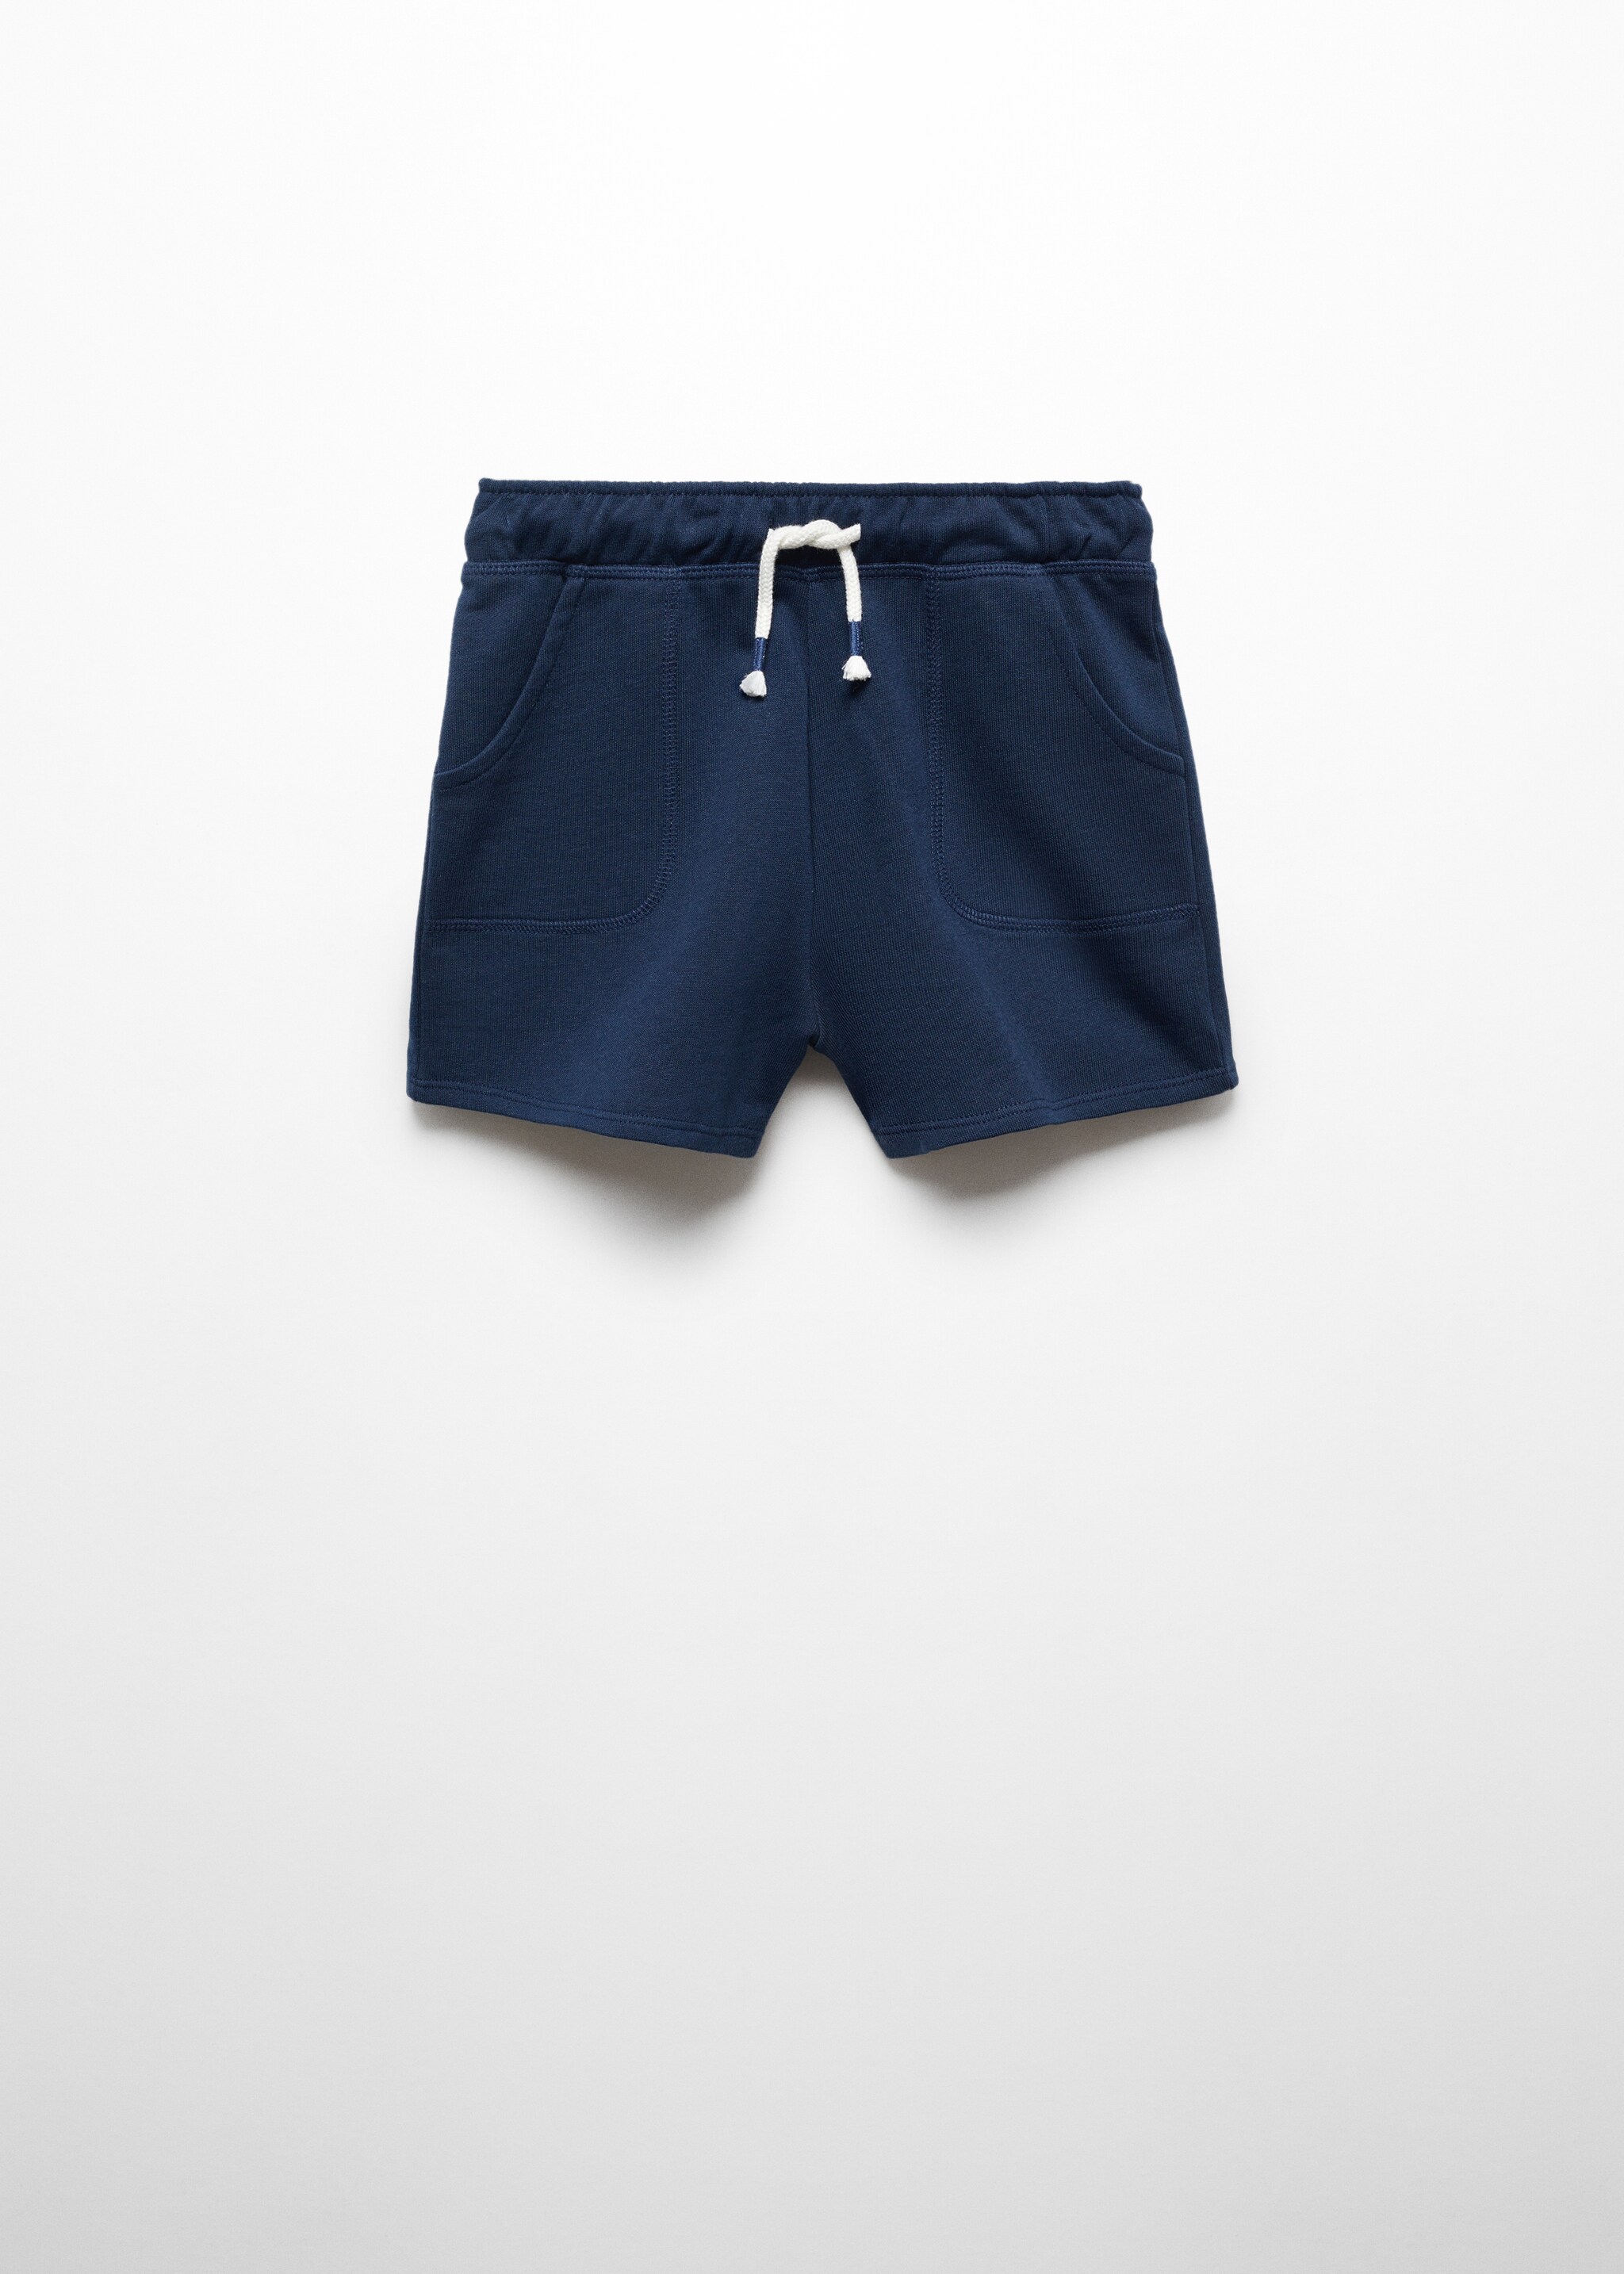 Katoenen shorts met elastische tailleband - Artikel zonder model